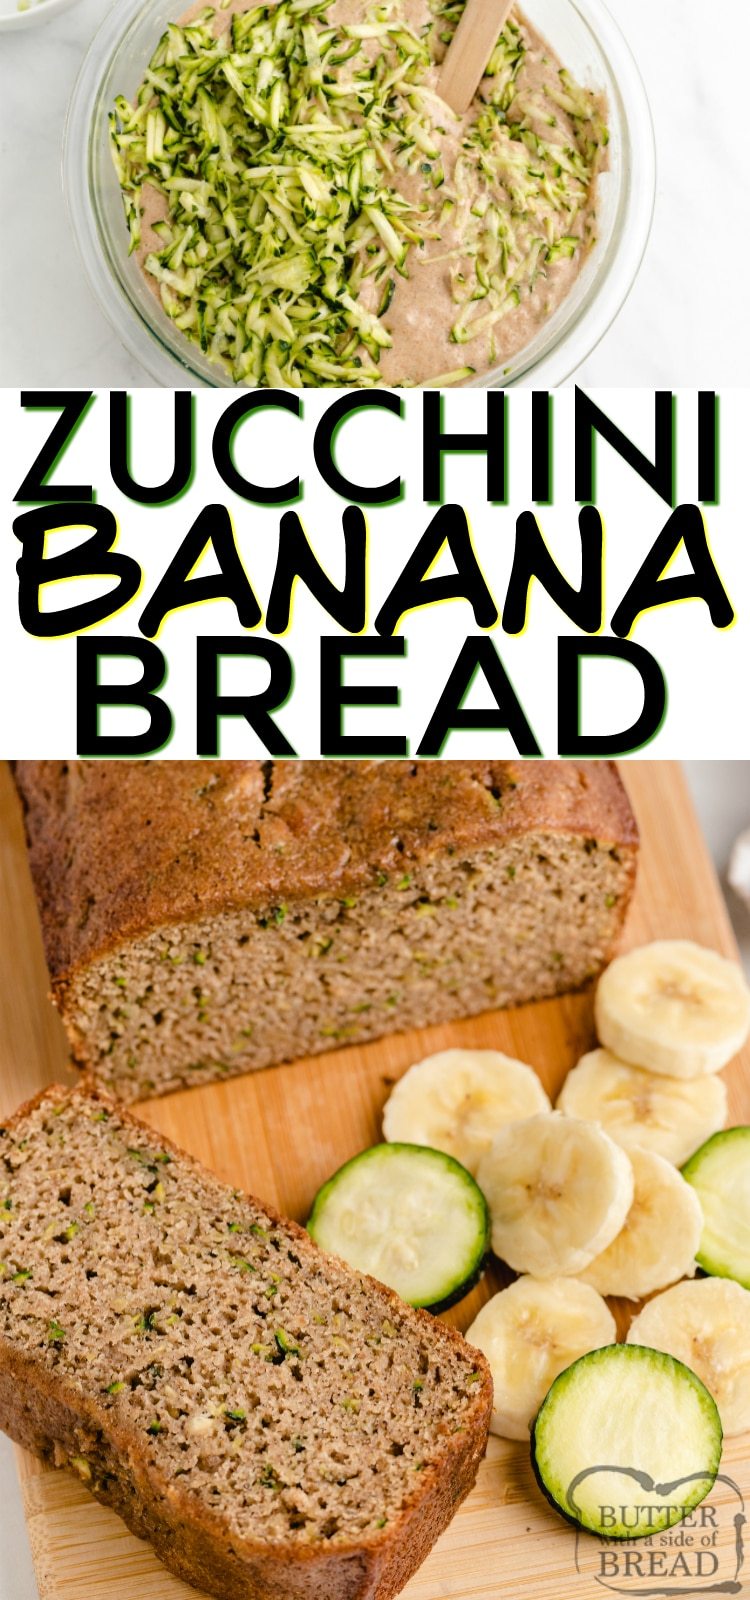 Zucchini Banana Bread is a perfect combination of zucchini bread and banana bread, all in one delicious quick bread recipe!